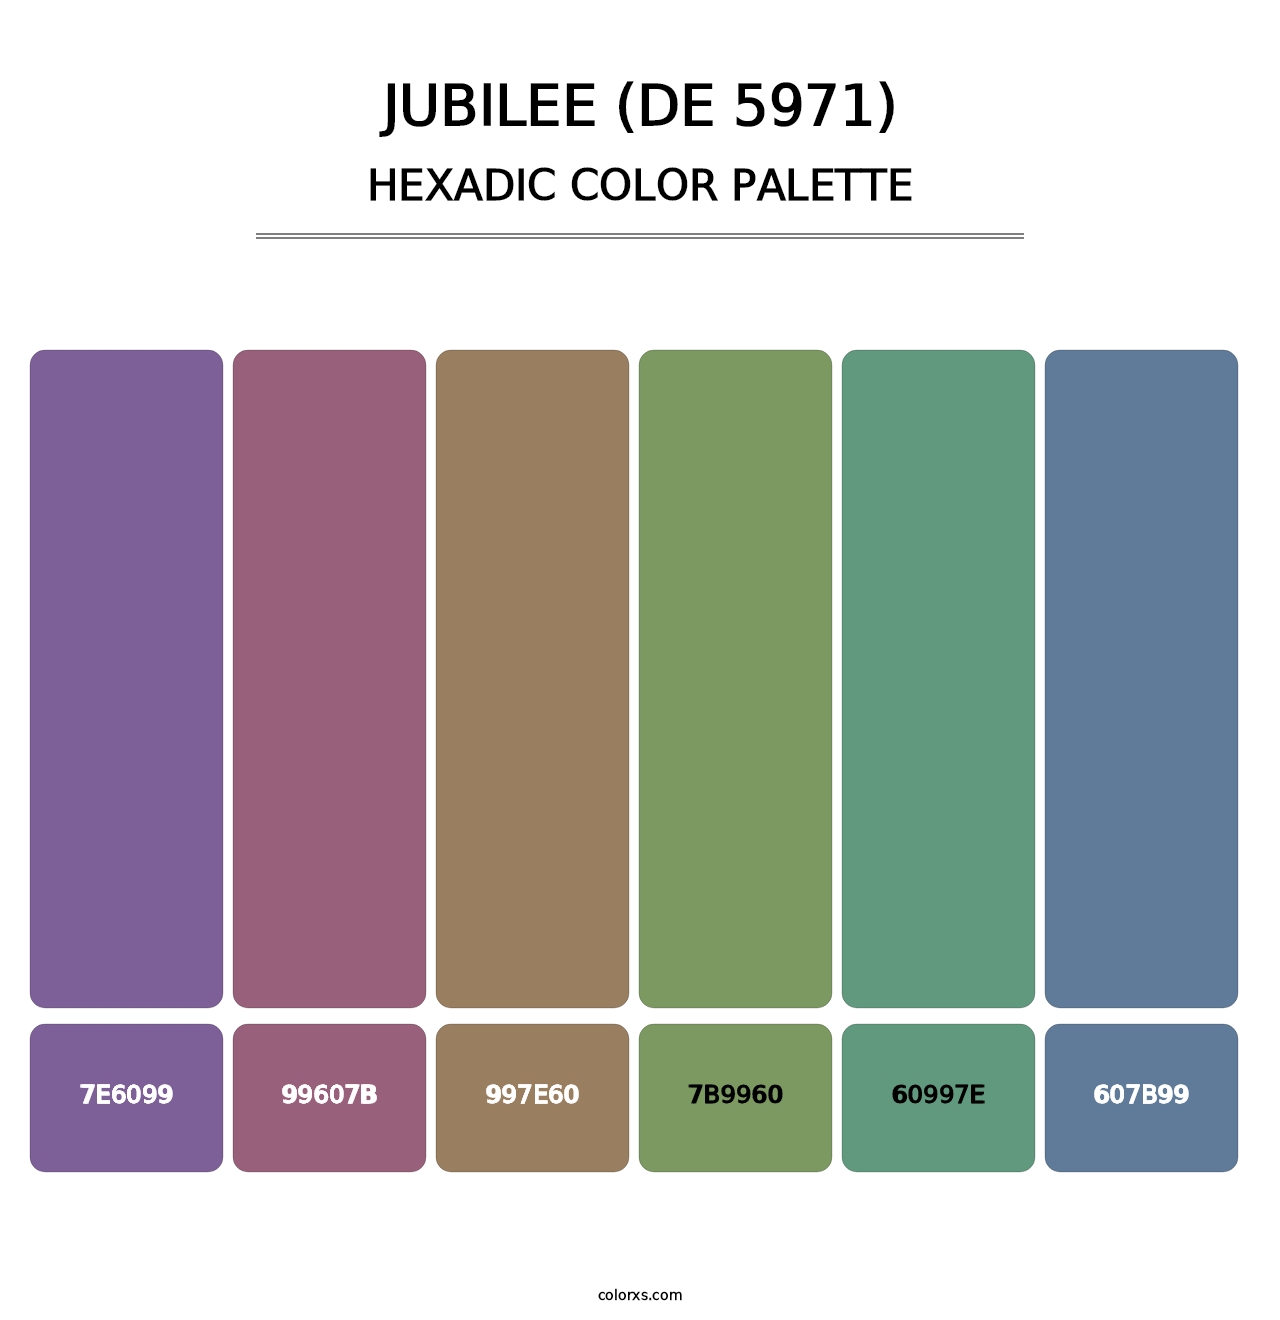 Jubilee (DE 5971) - Hexadic Color Palette